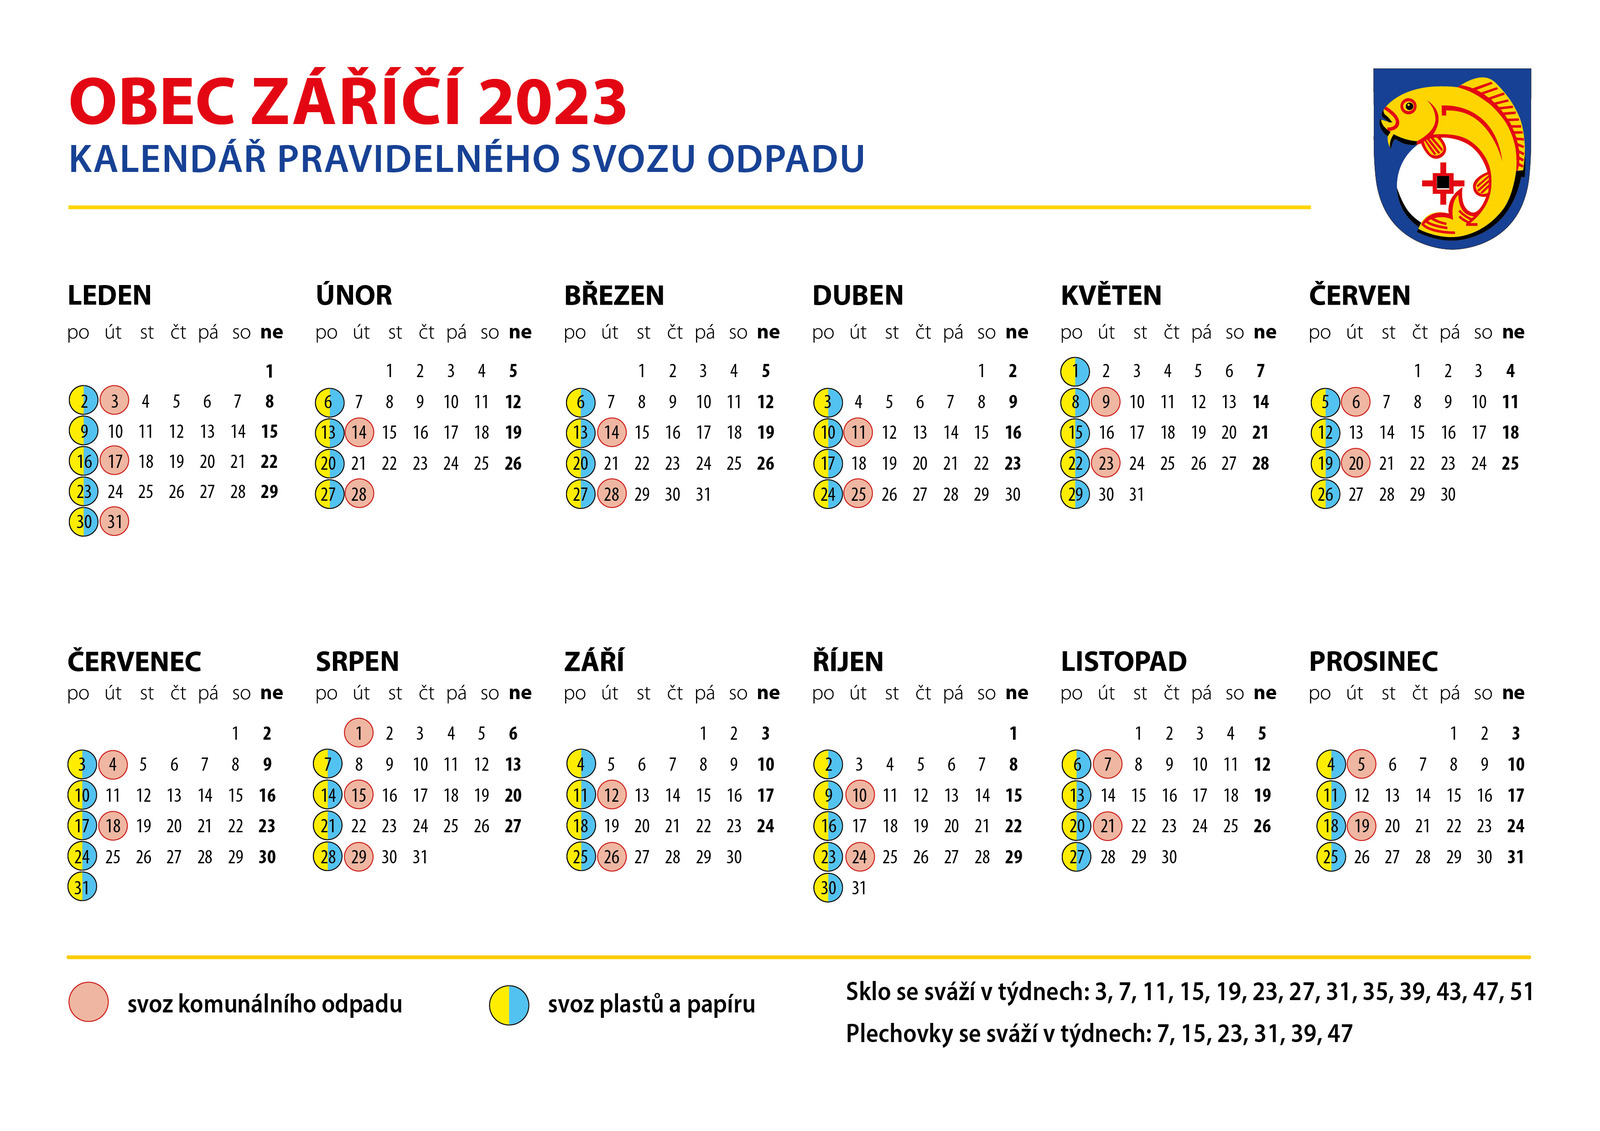 kalendar_odpadu_2023 Zarici.jpg